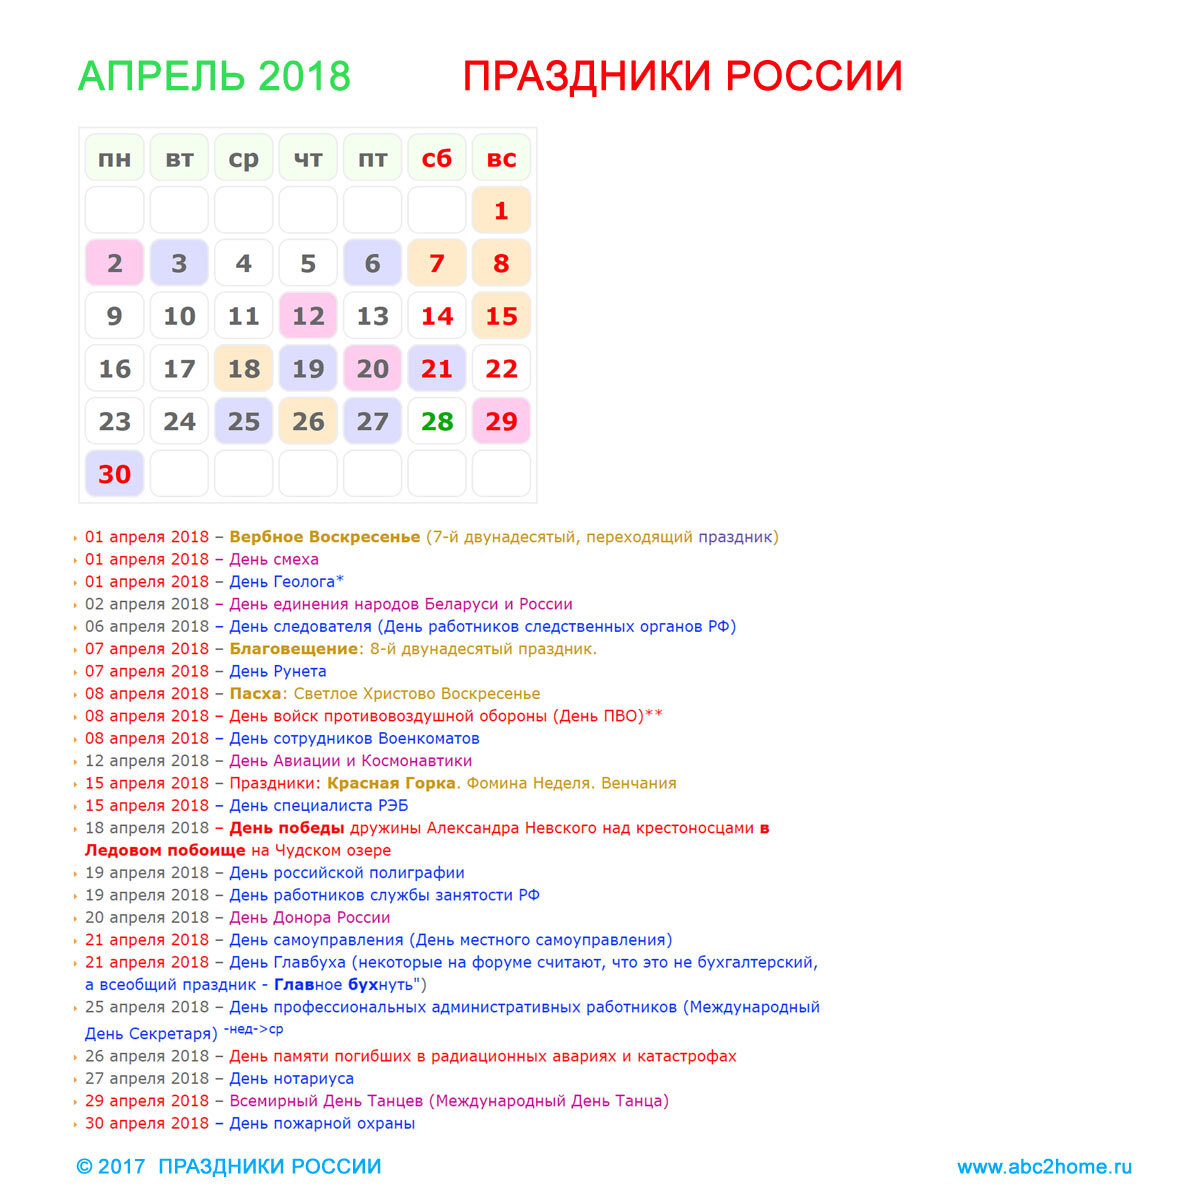 Большие праздники в апреле. Праздники в апреле. Апрель праздники апреля. Праздники в апреле в России. Профессиональные праздники в апреле.